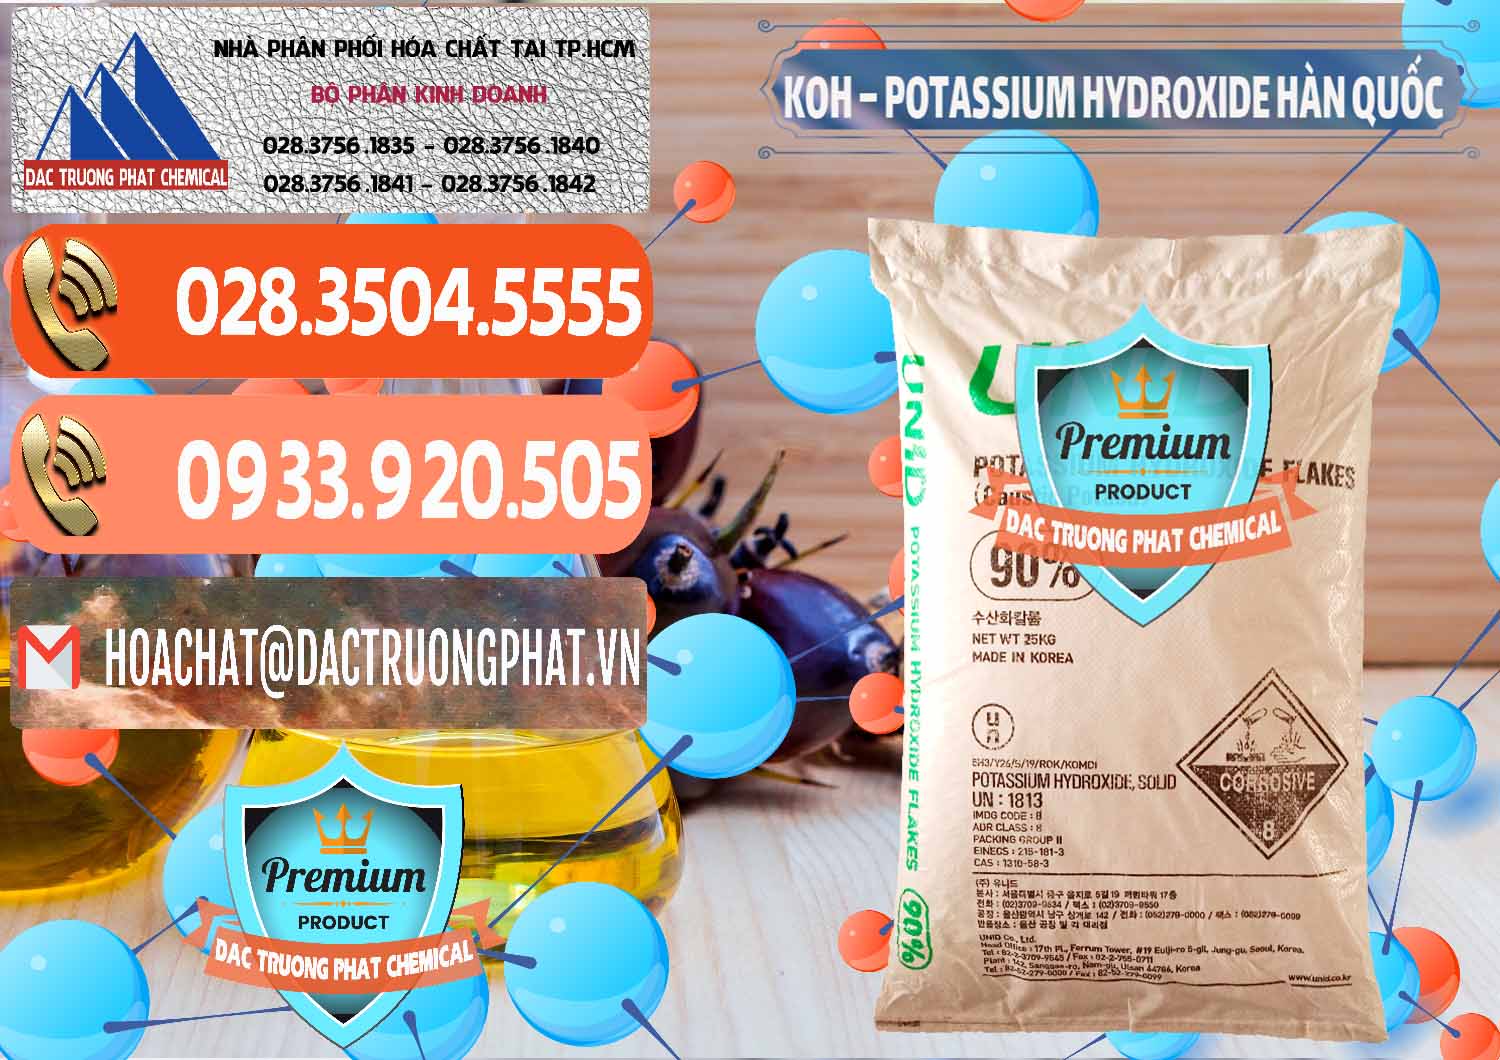 Nơi chuyên cung cấp và bán KOH ( 90%) – Potassium Hydroxide Unid Hàn Quốc Korea - 0090 - Phân phối & kinh doanh hóa chất tại TP.HCM - hoachatmientay.com